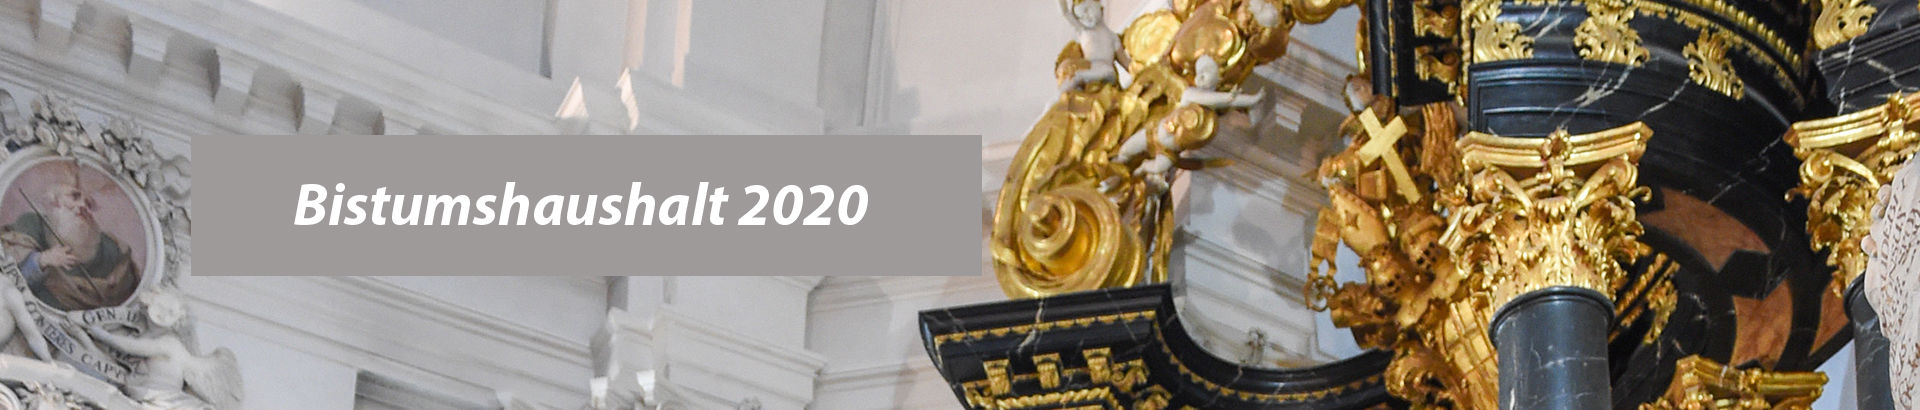 Diözesan-Kirchensteuerrat verabschiedete Haushalt 2020 – zugleich Finanzbericht 2018 vorgelegt